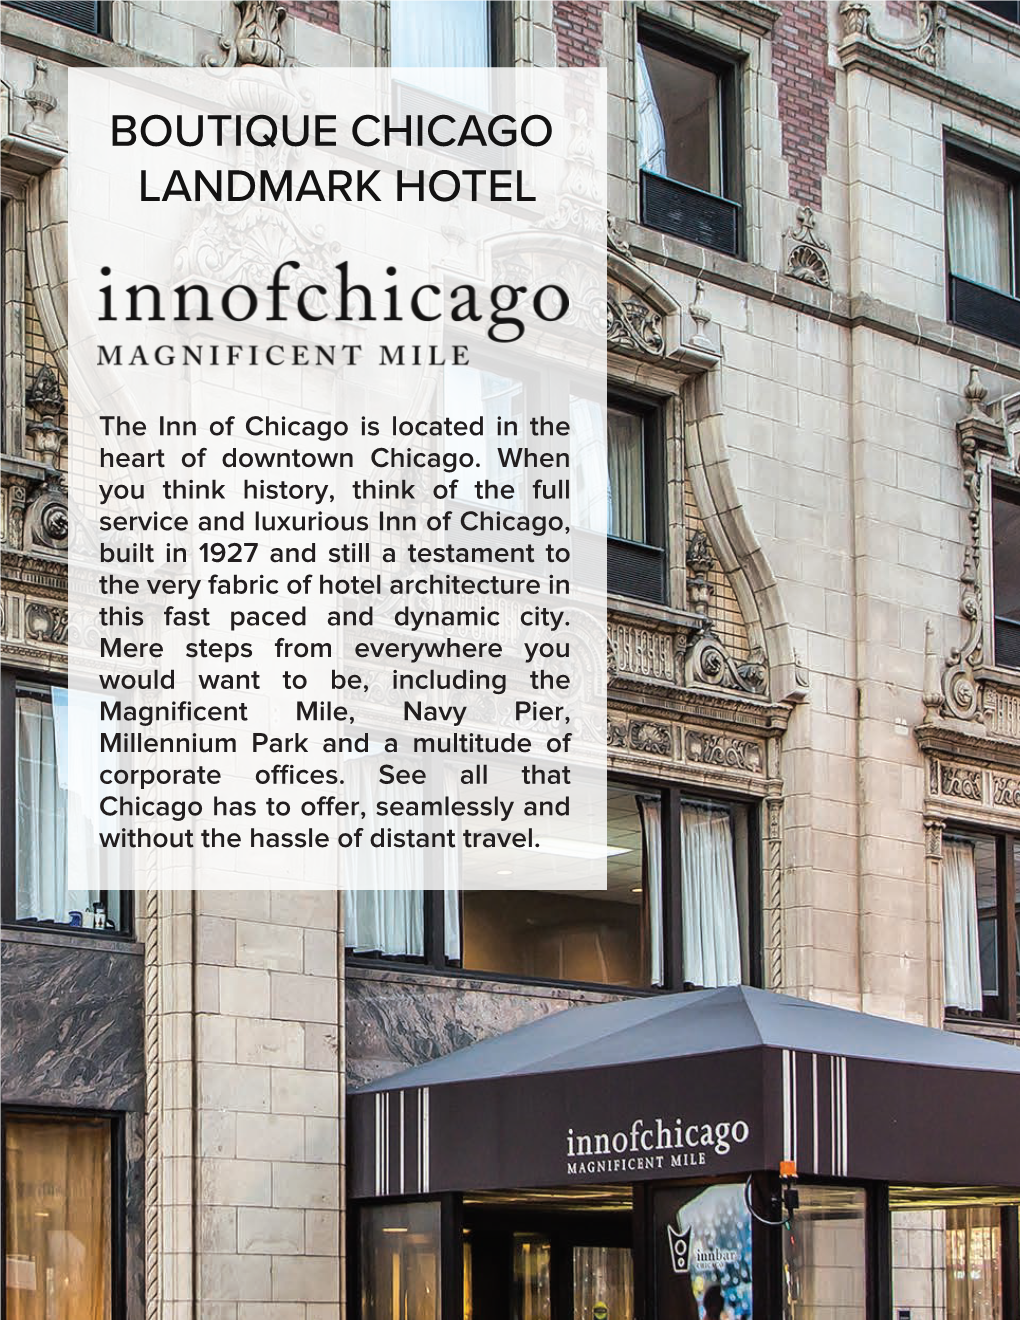 Boutique Chicago Landmark Hotel